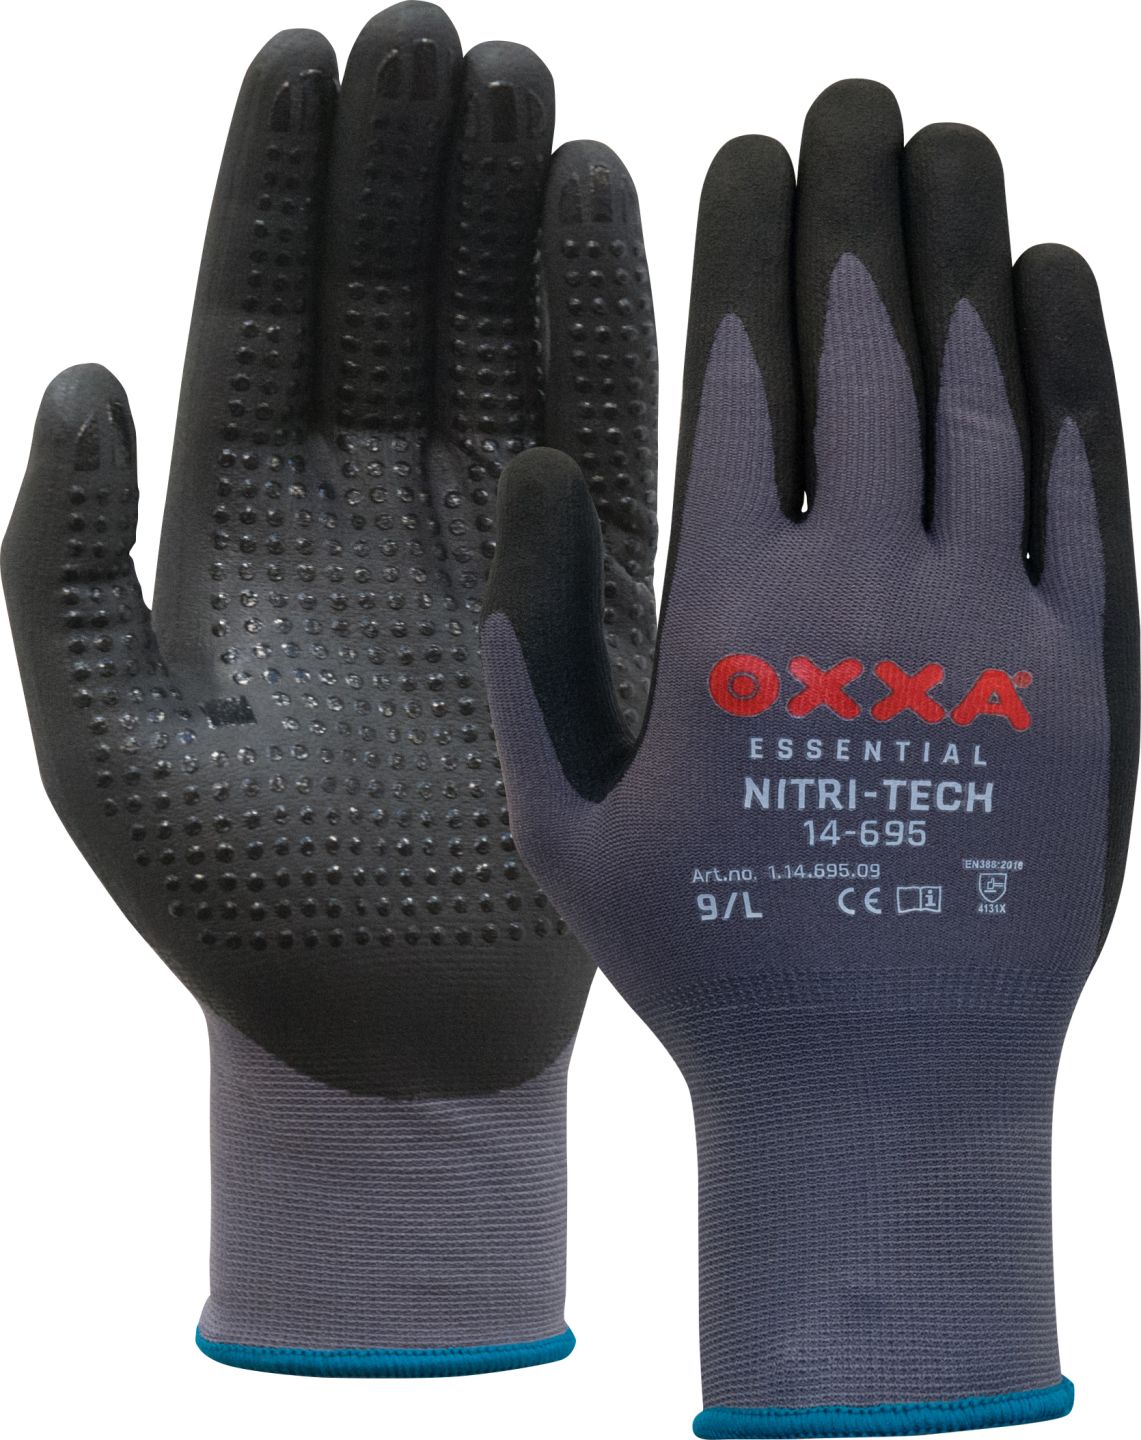 OXXA Nitri-Tech 14-695 werkhandschoenen